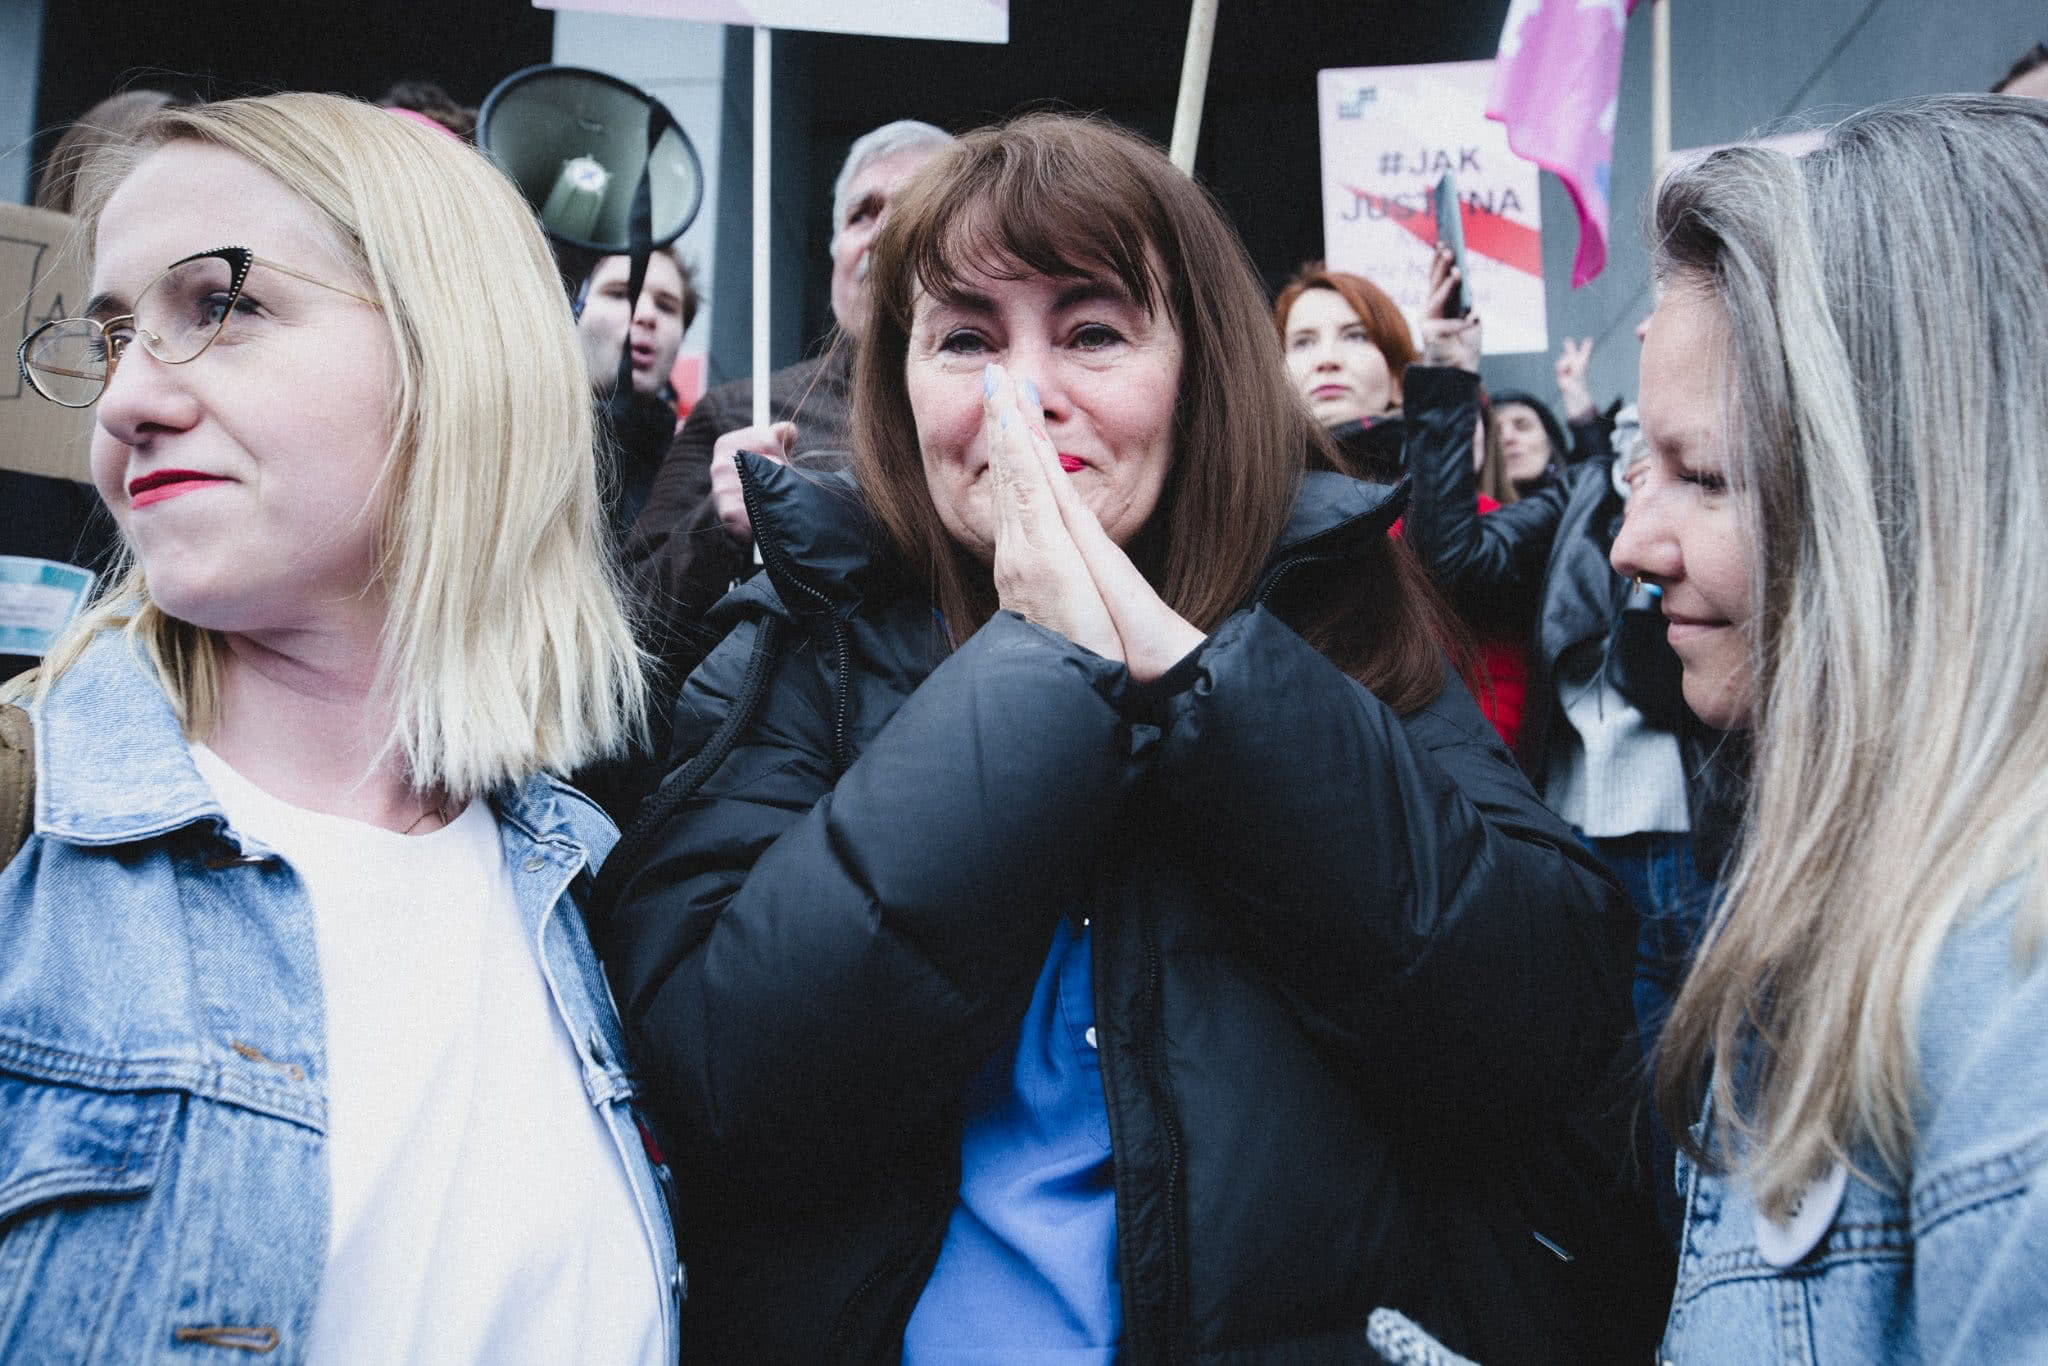 Od lewej - Kinga Jelińska, Justyna Wydrzyńska i Natalia Broniarczyk. Wokół aktywistek tłum prostestujących za Justyną osób. Justyna ma załzawione od wzruszenia oczy i zasłania sobie usta w geście zaskoczenia.